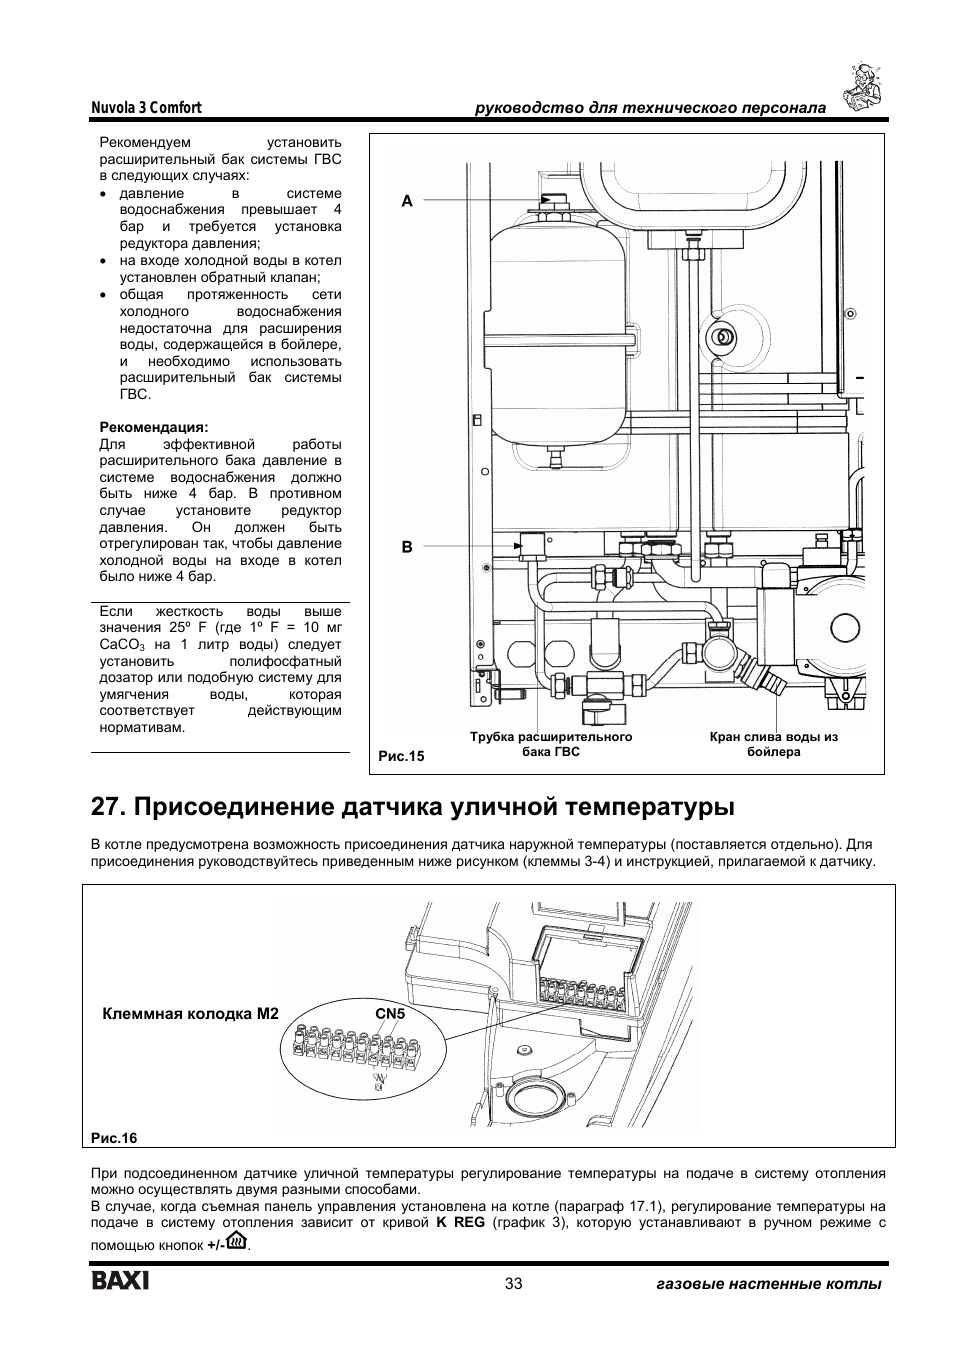 Котел Baxi Nuvola-3 Comfort панель управления